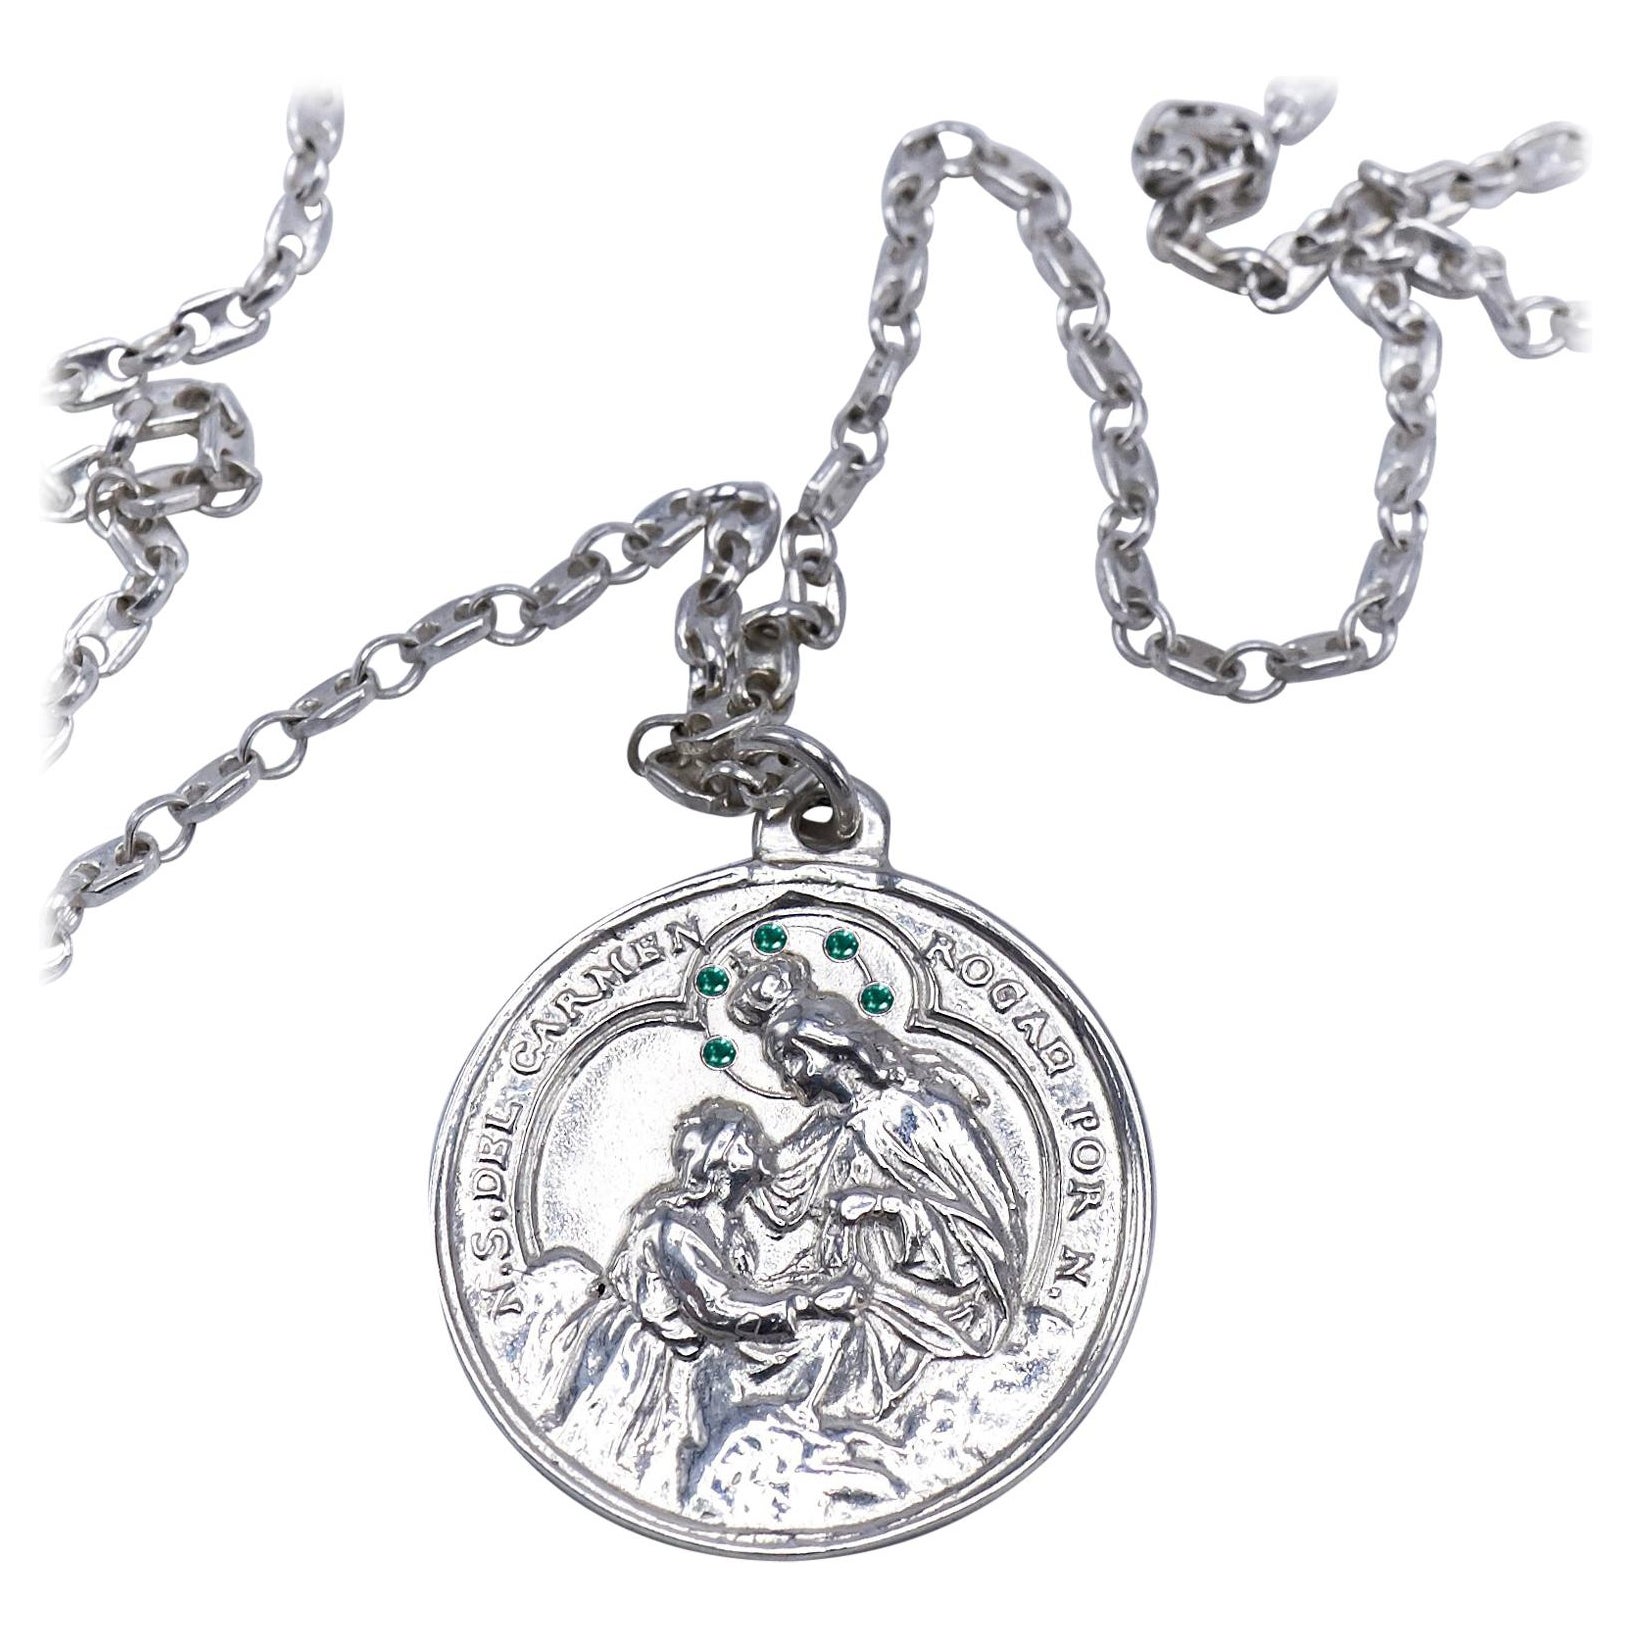 Chaîne collier médaillon en argent avec médaille d'émeraude de la Vierge Marie Miraculous de J. Dauphin